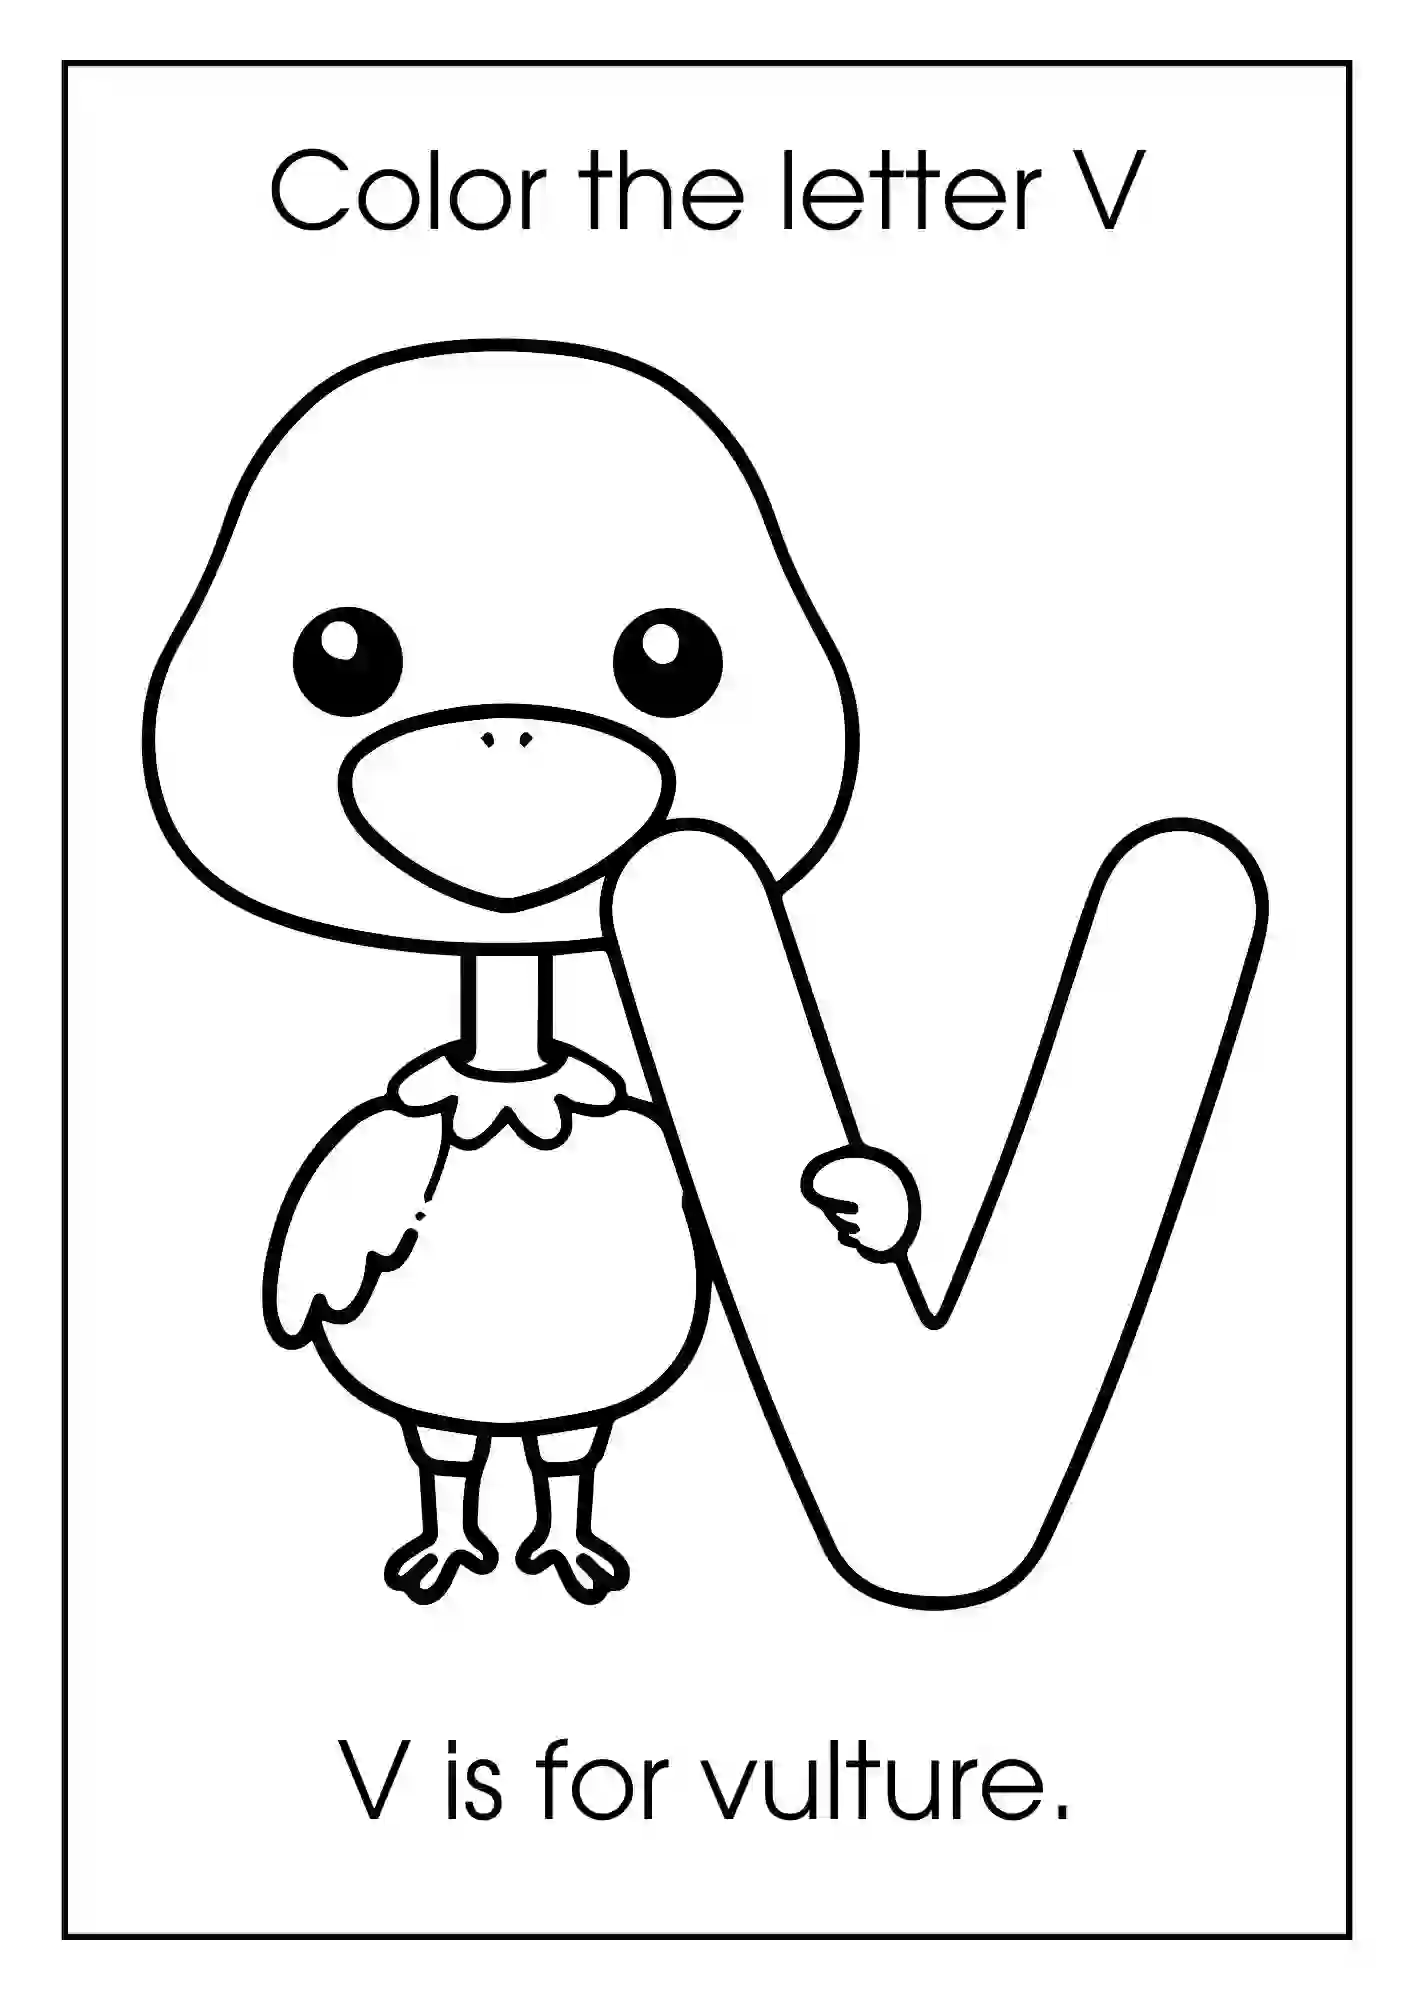 Animal Alphabet Coloring Worksheets For Kindergarten (Letter v with vulture)